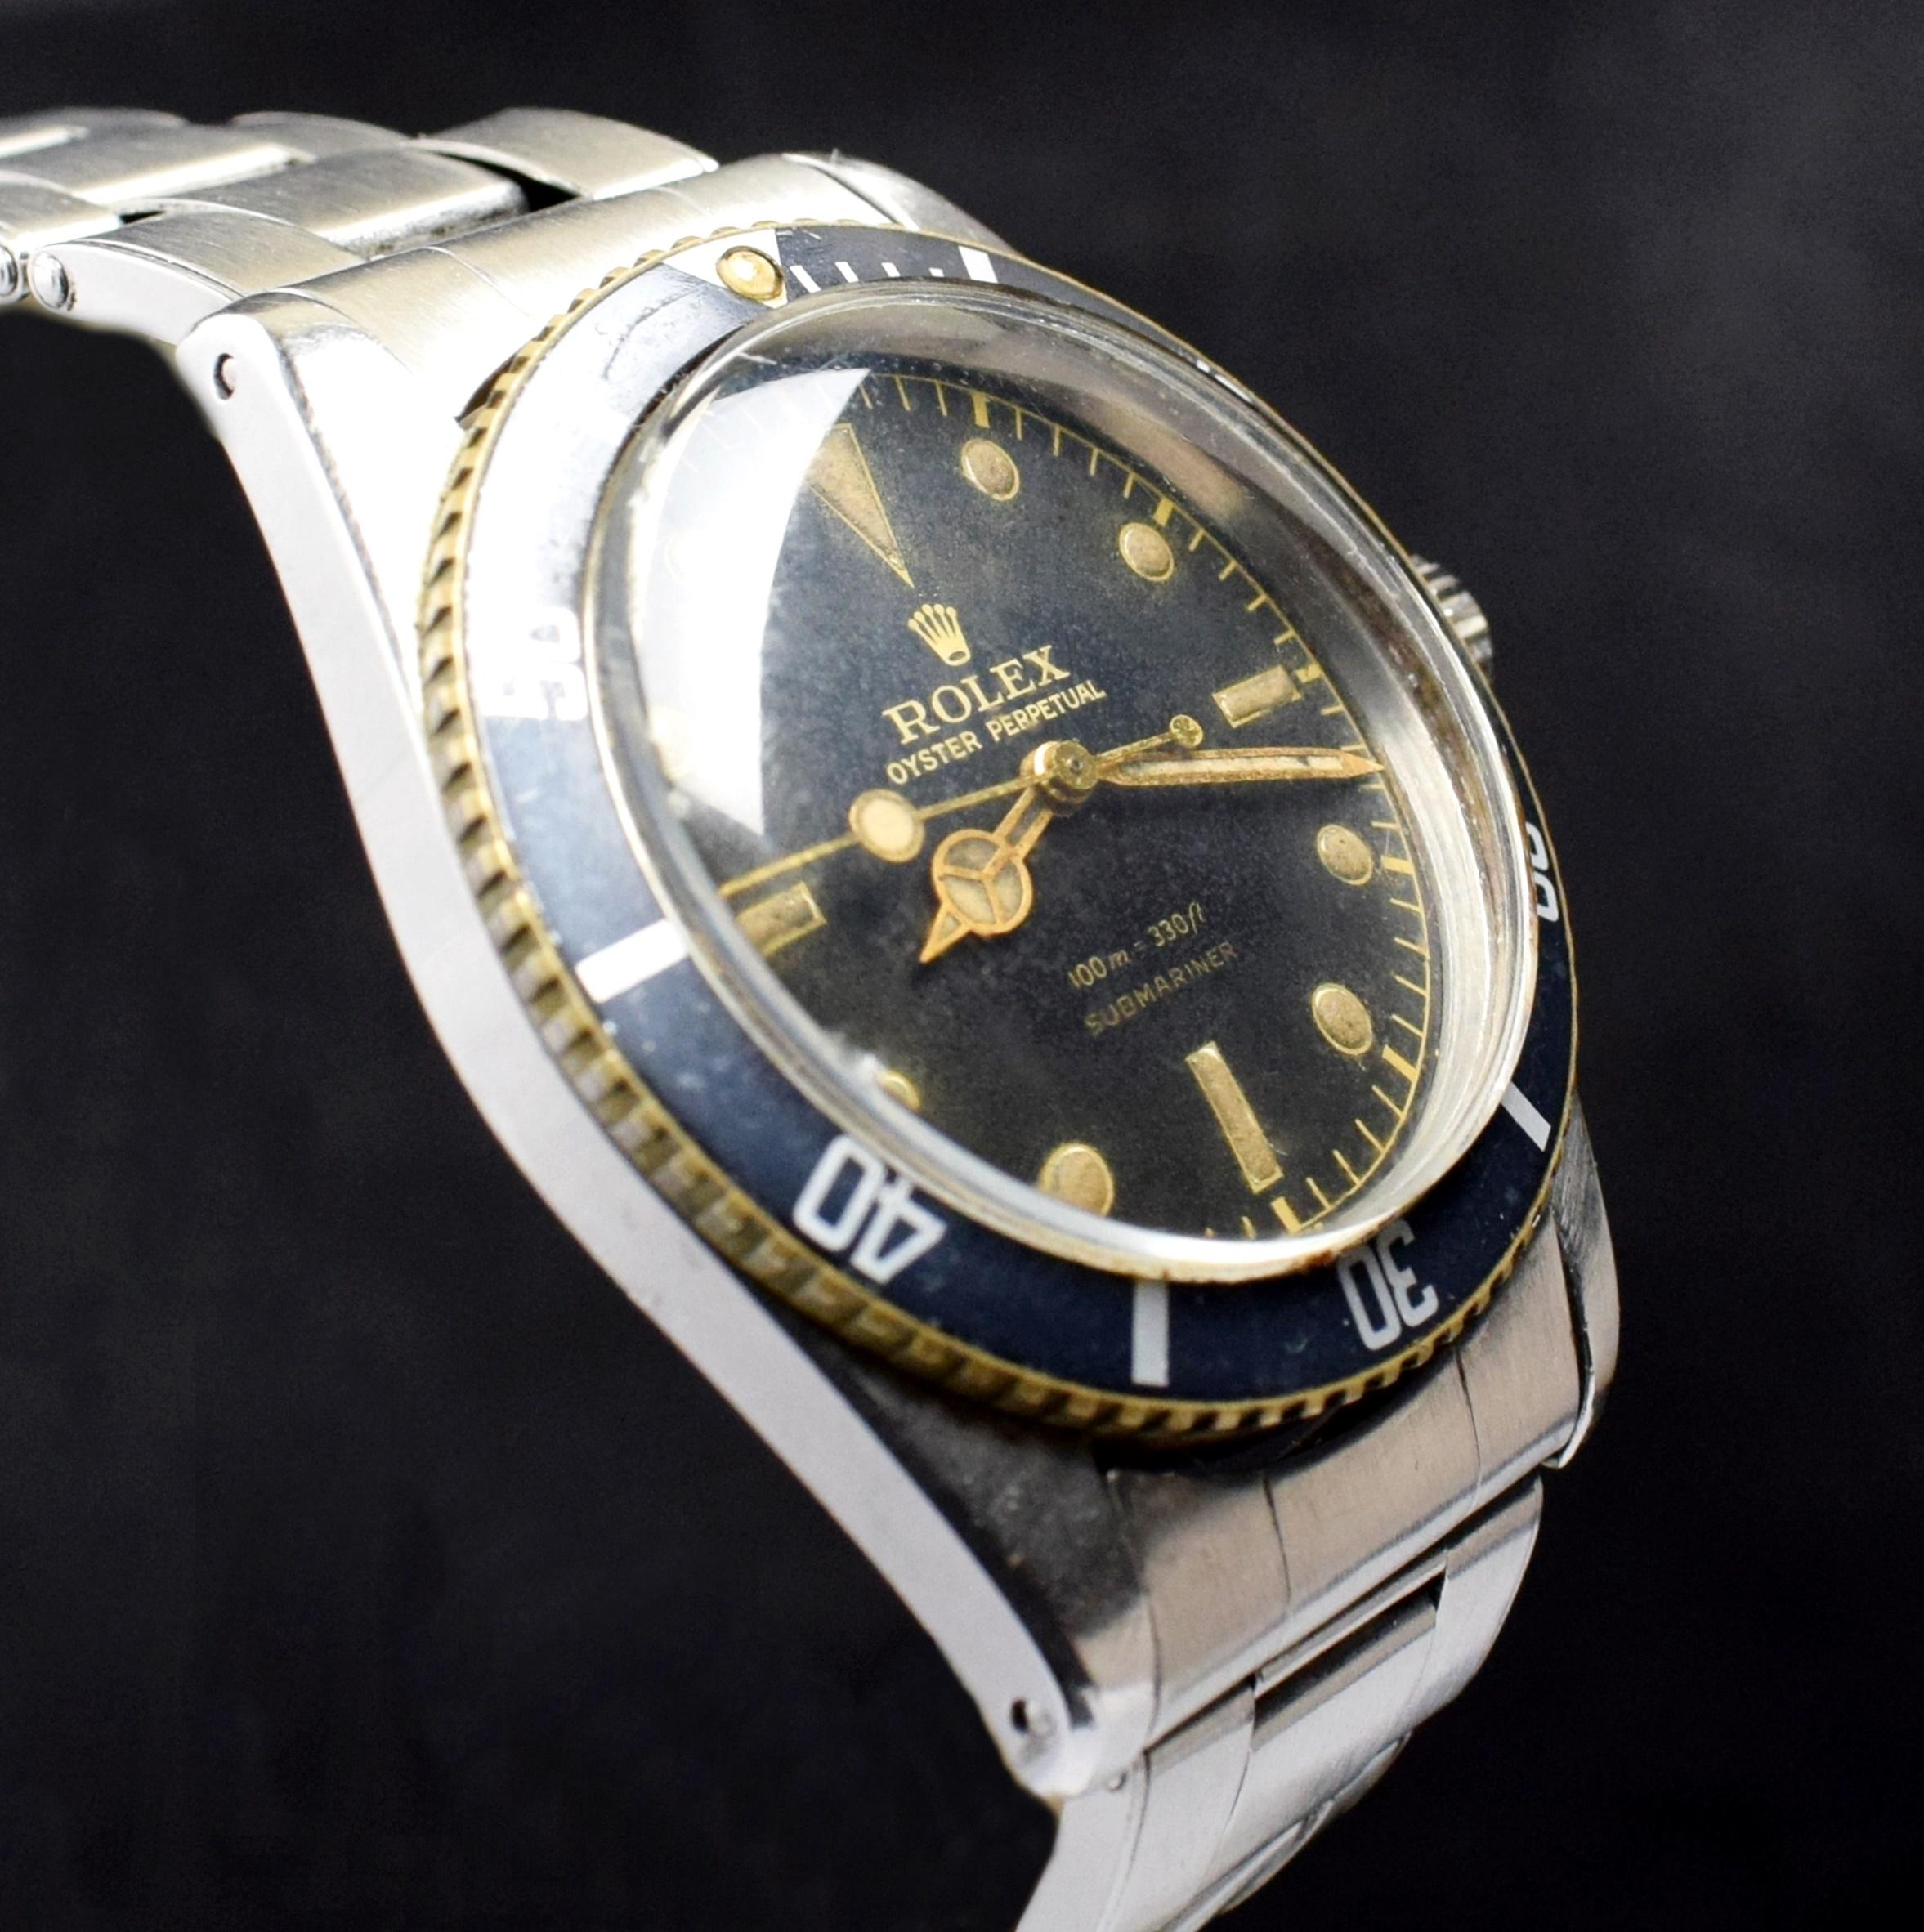 Rolex Submariner, petite montre automatique en acier avec cadran doré en forme de couronne, 1956 1